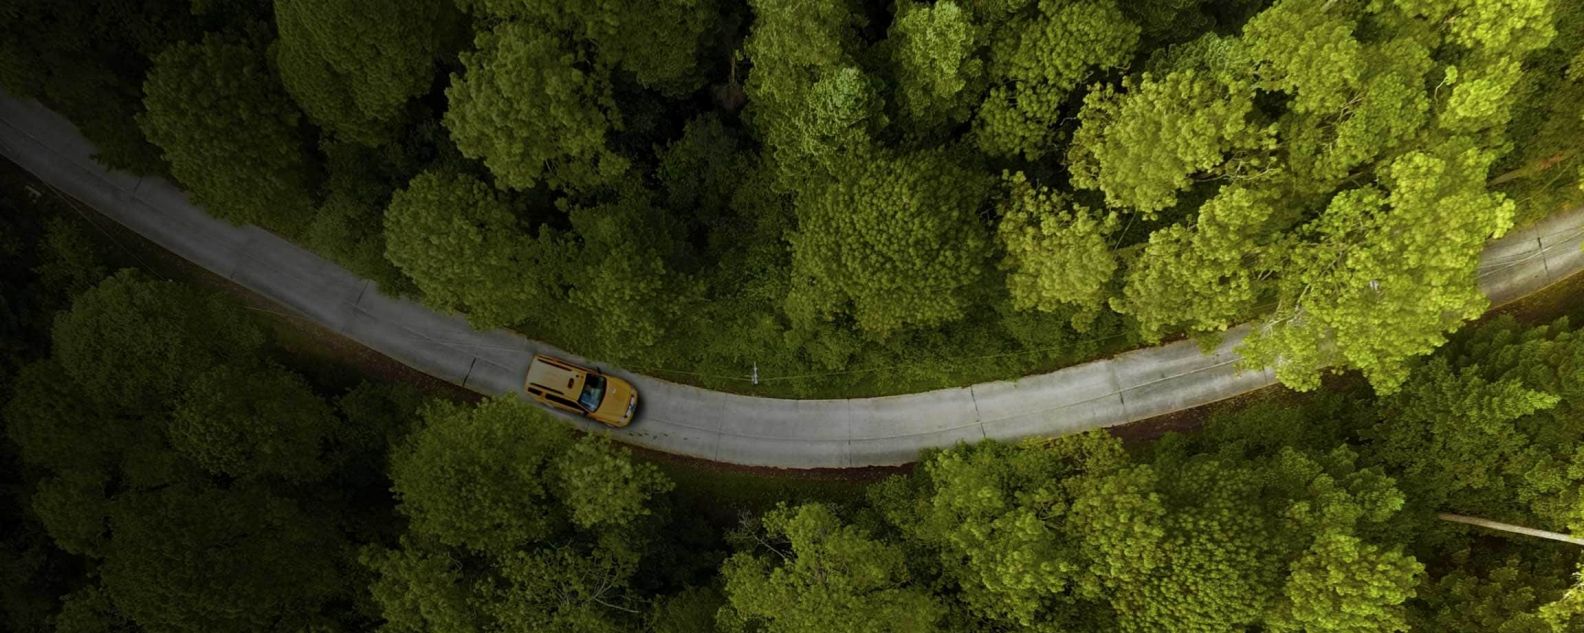 Vista aérea de un coche circulando por una carretera con árboles a ambos lados